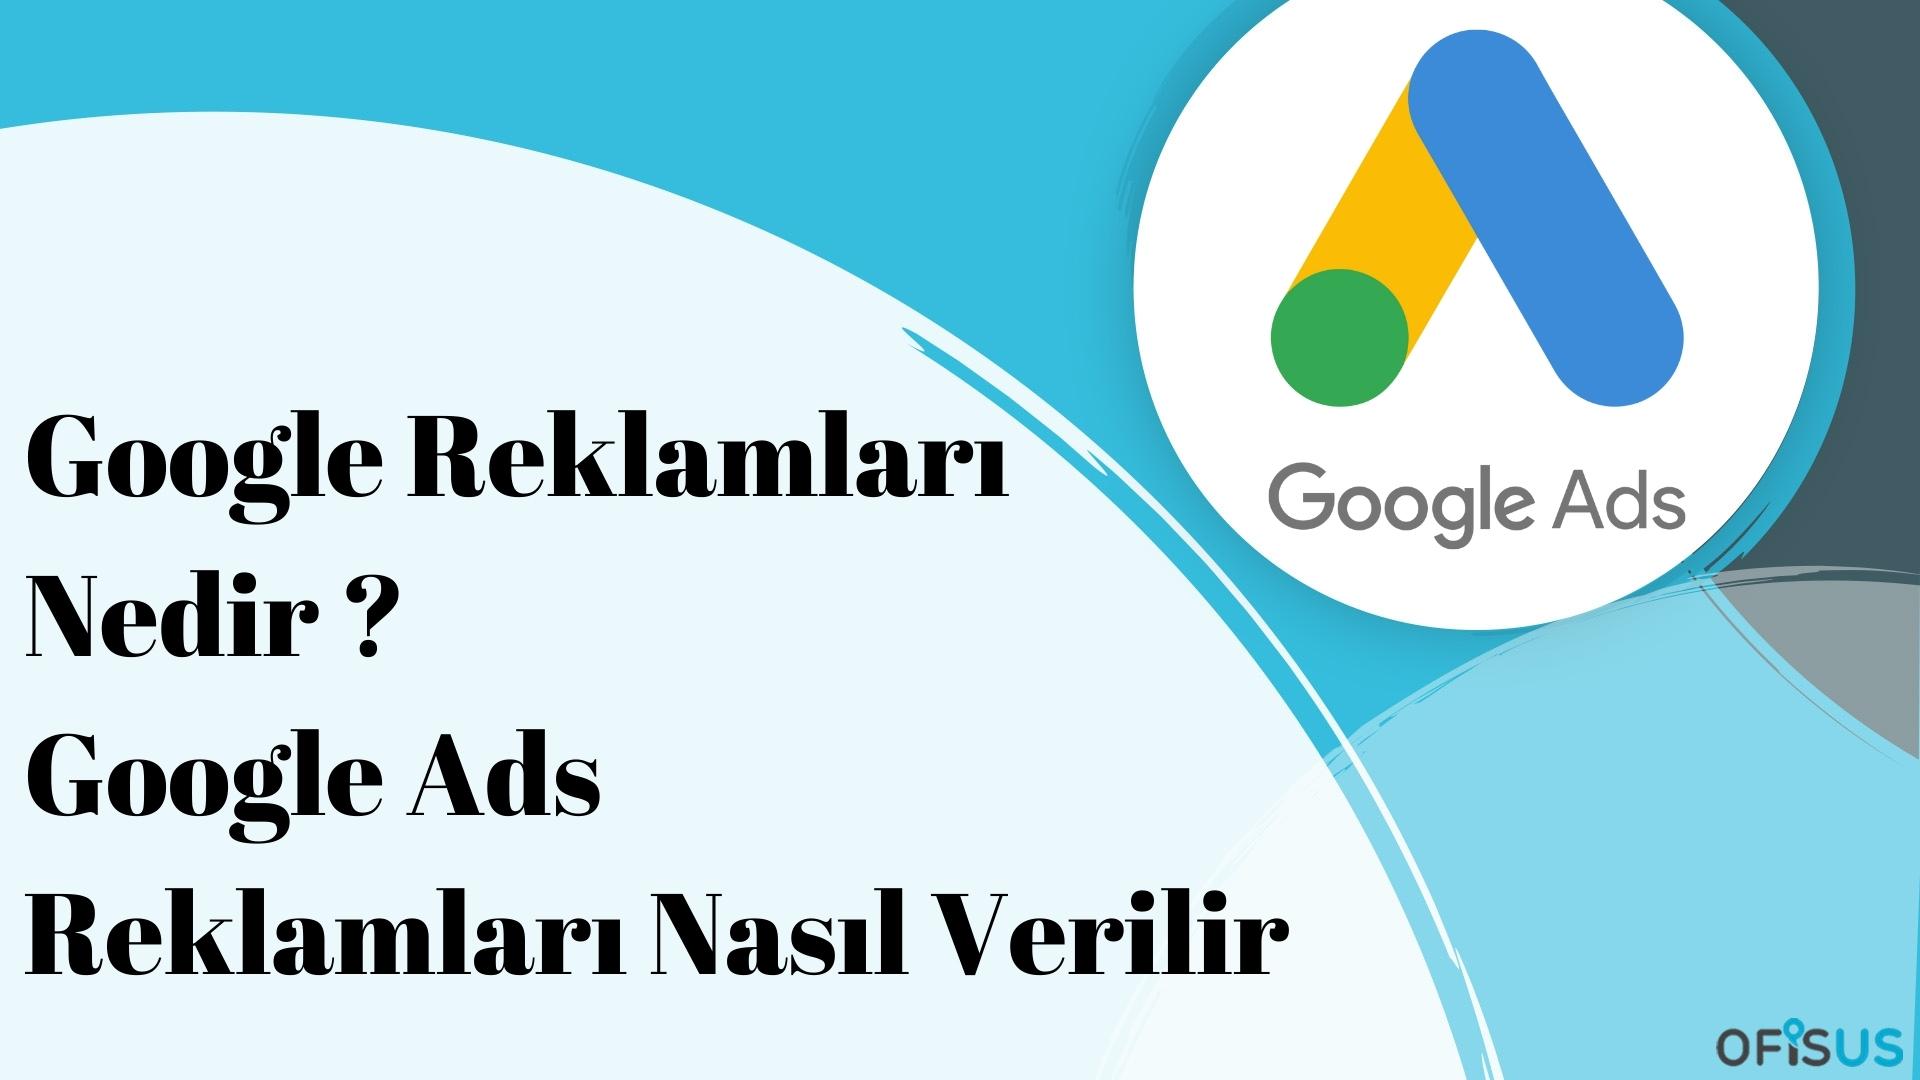 Ofisus Danışmanlık - Google Reklamları Nedir ? Google Ads Reklamları Nasıl Verilir ?